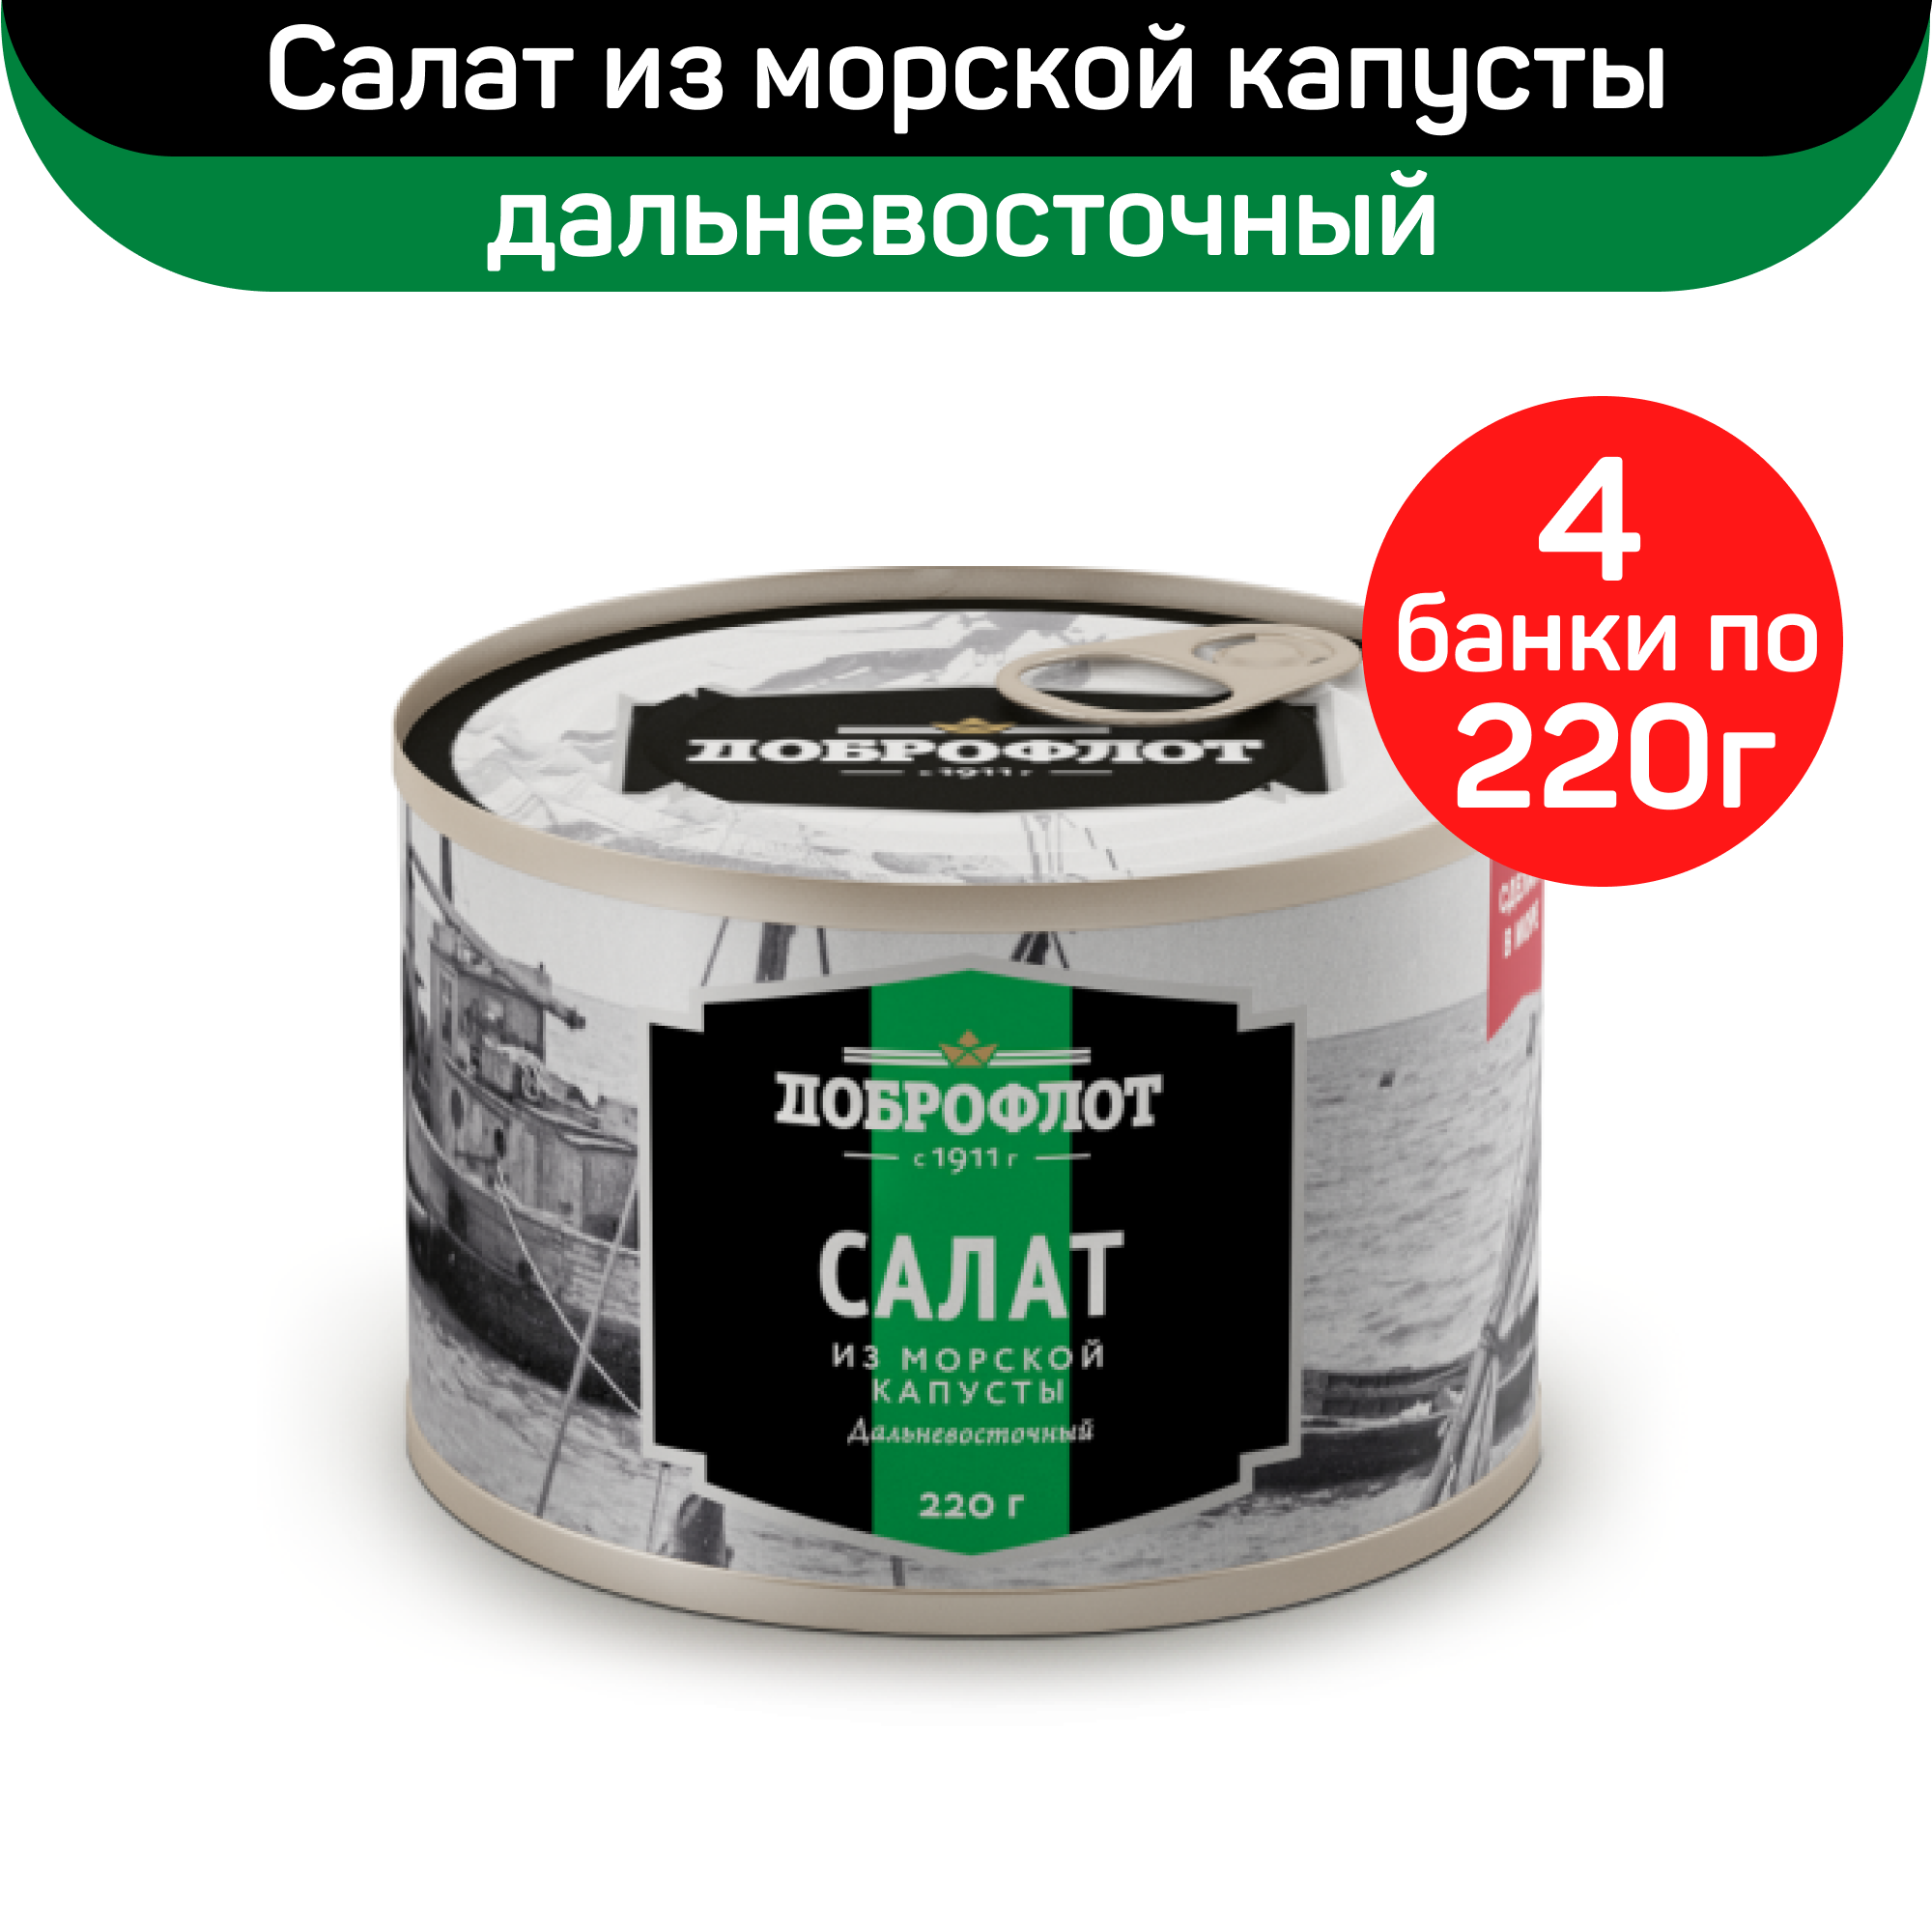 Купить консервы Доброфлот салат Дальневосточный из морской капусты, 4 шт по 220 г, цены на Мегамаркет | Артикул: 600014116215